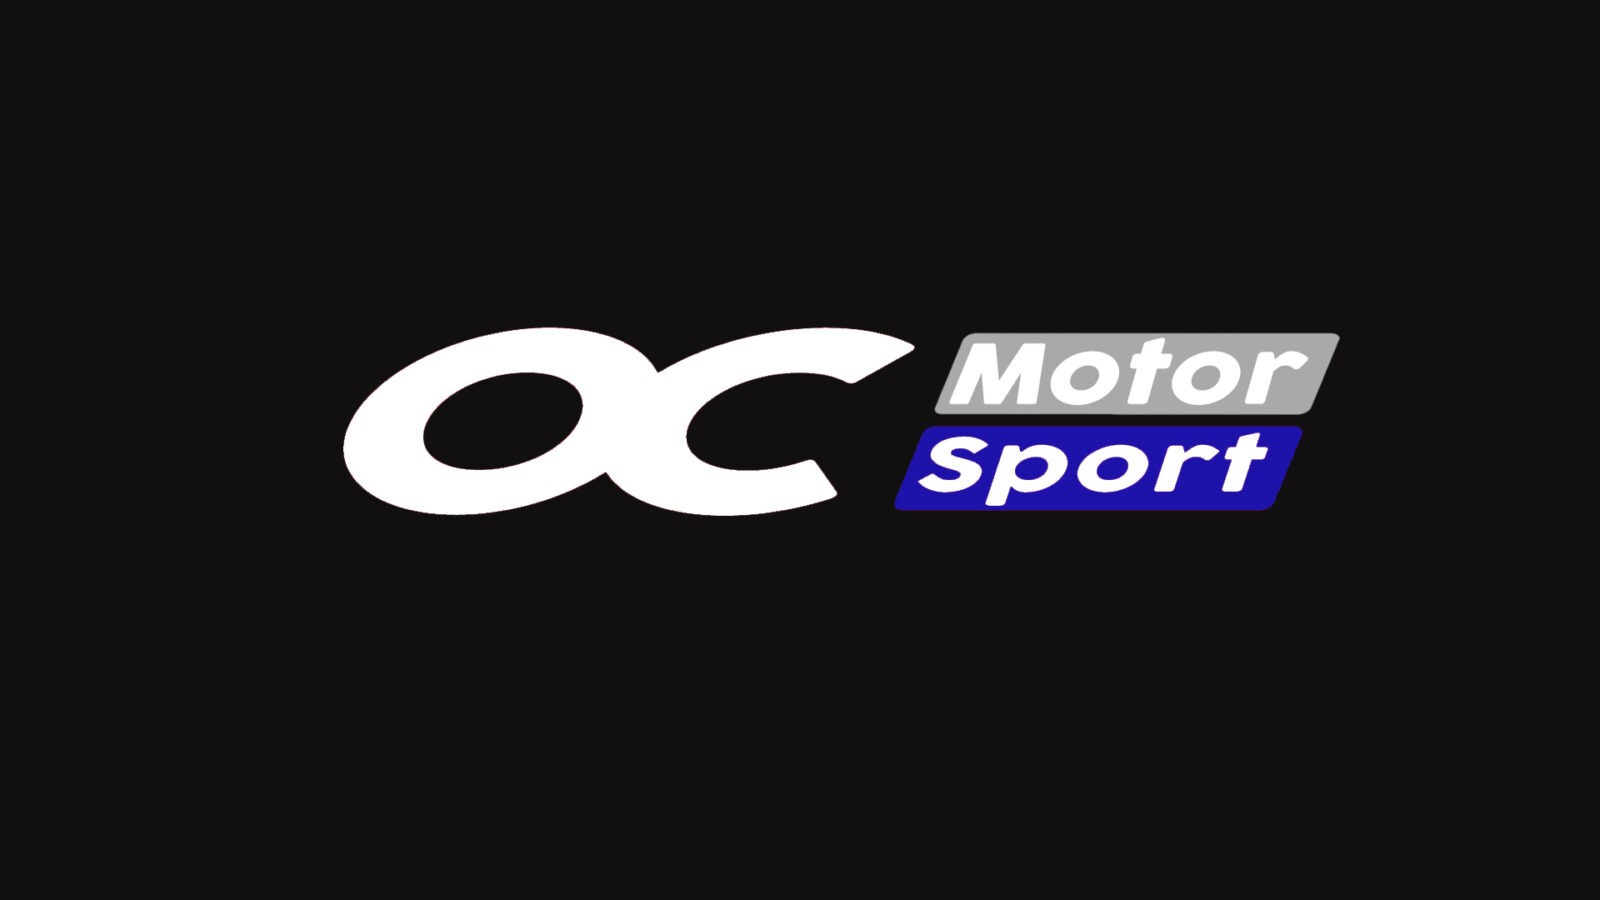 OC Motorsport